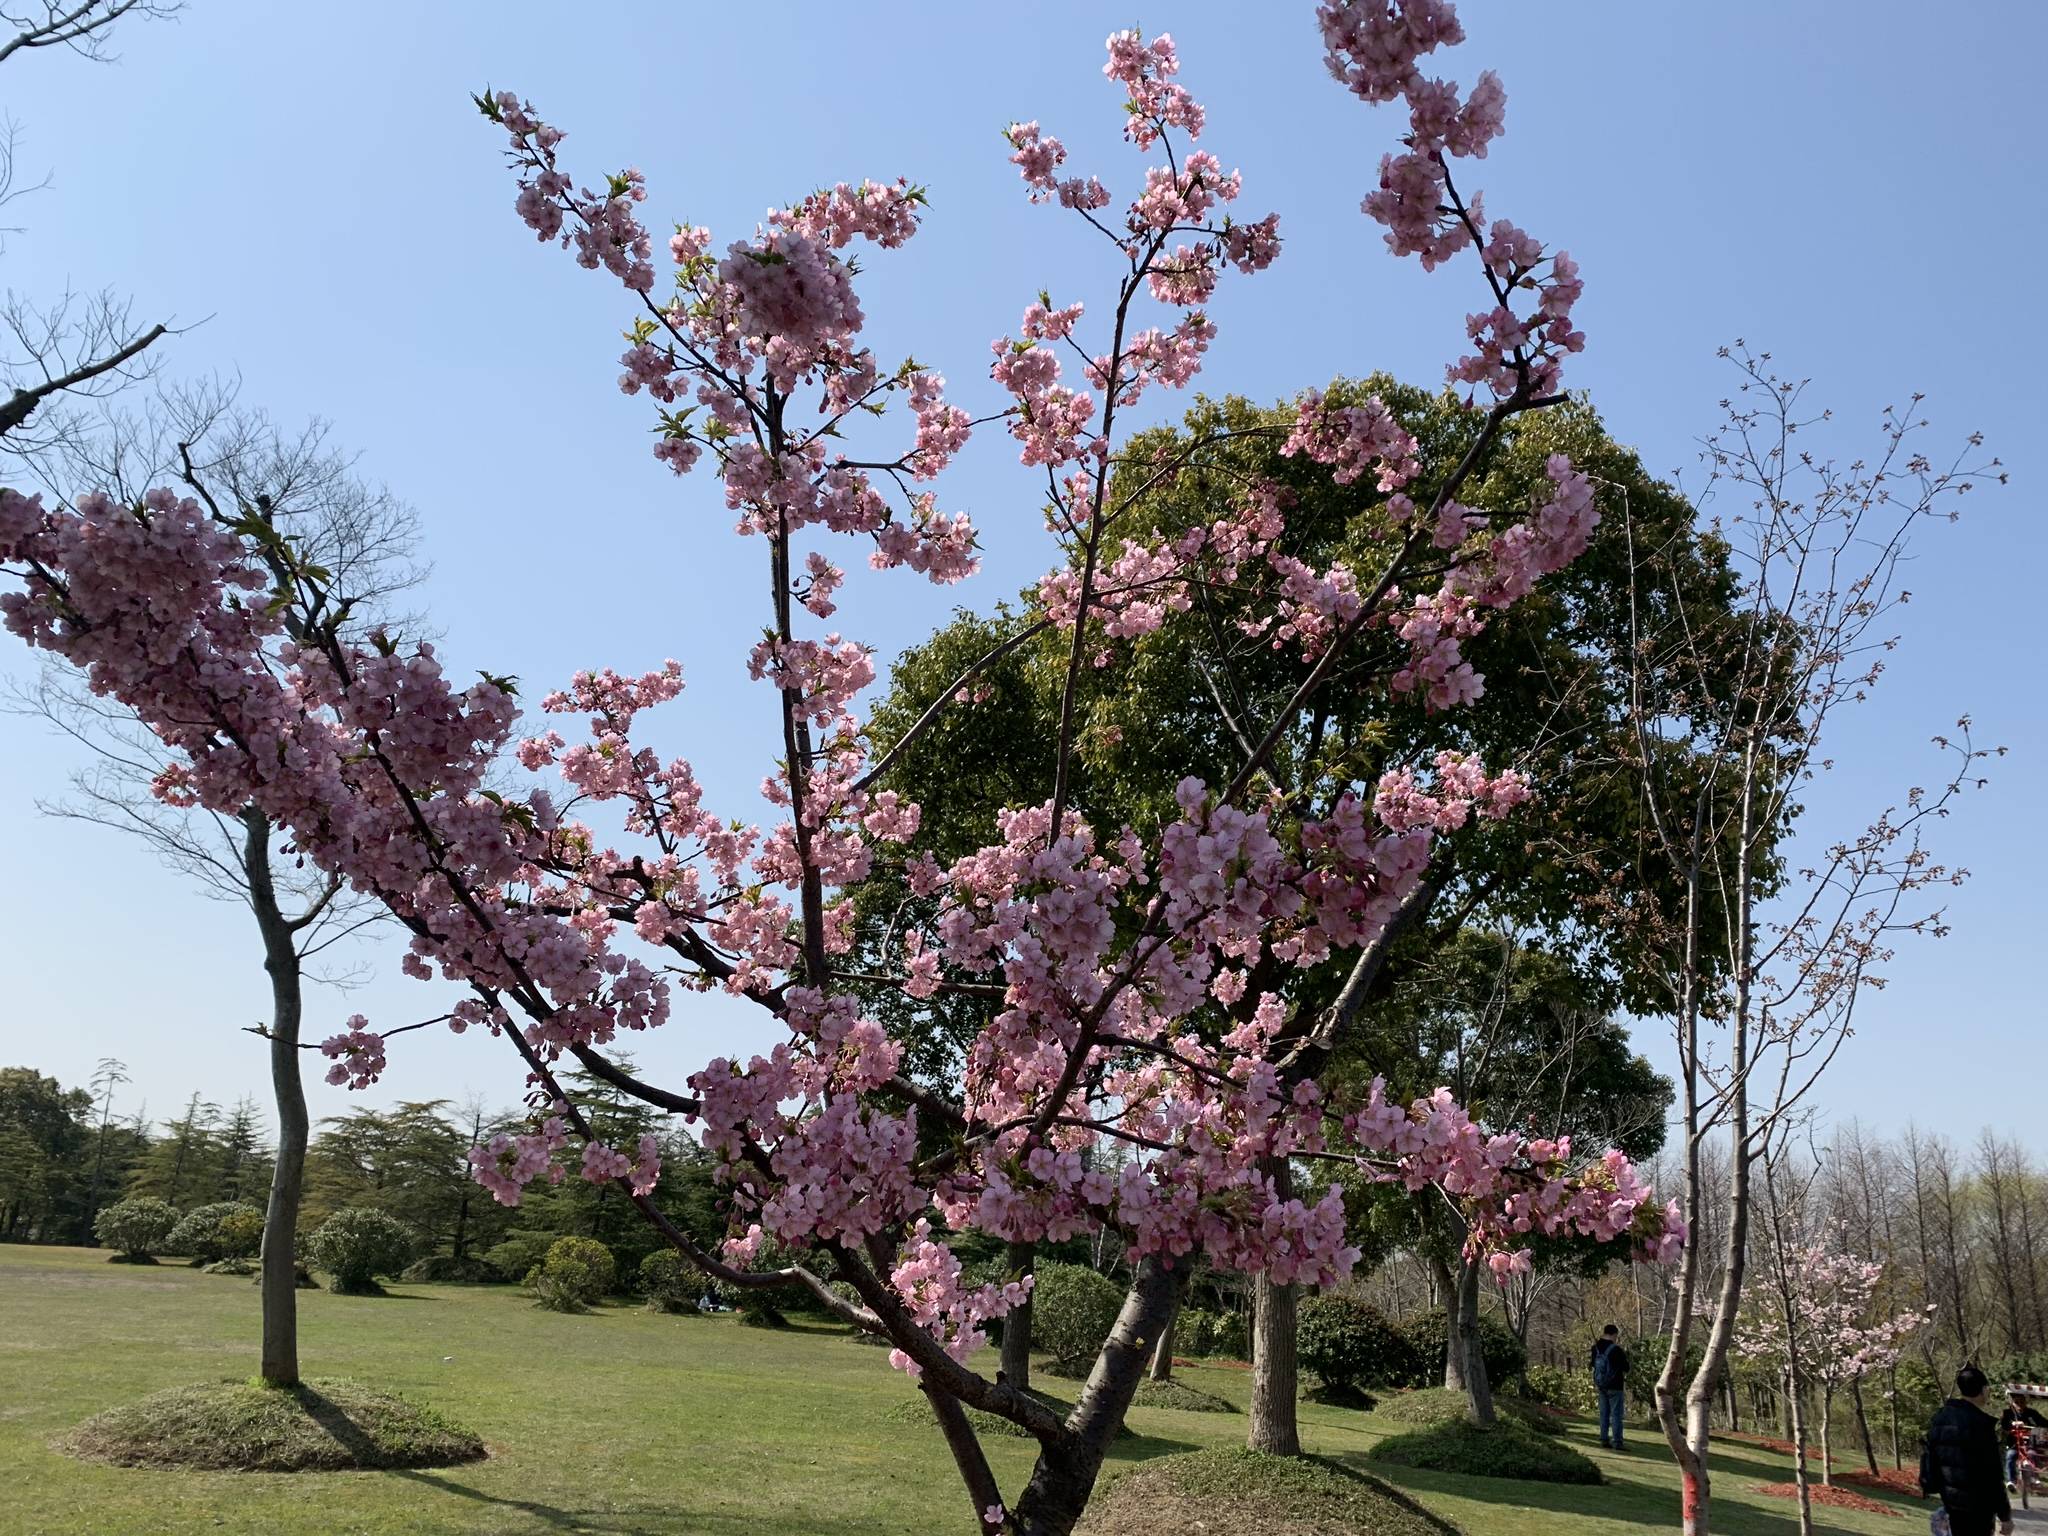 【上海】顾村公园:一场与樱花的浪漫邂逅!